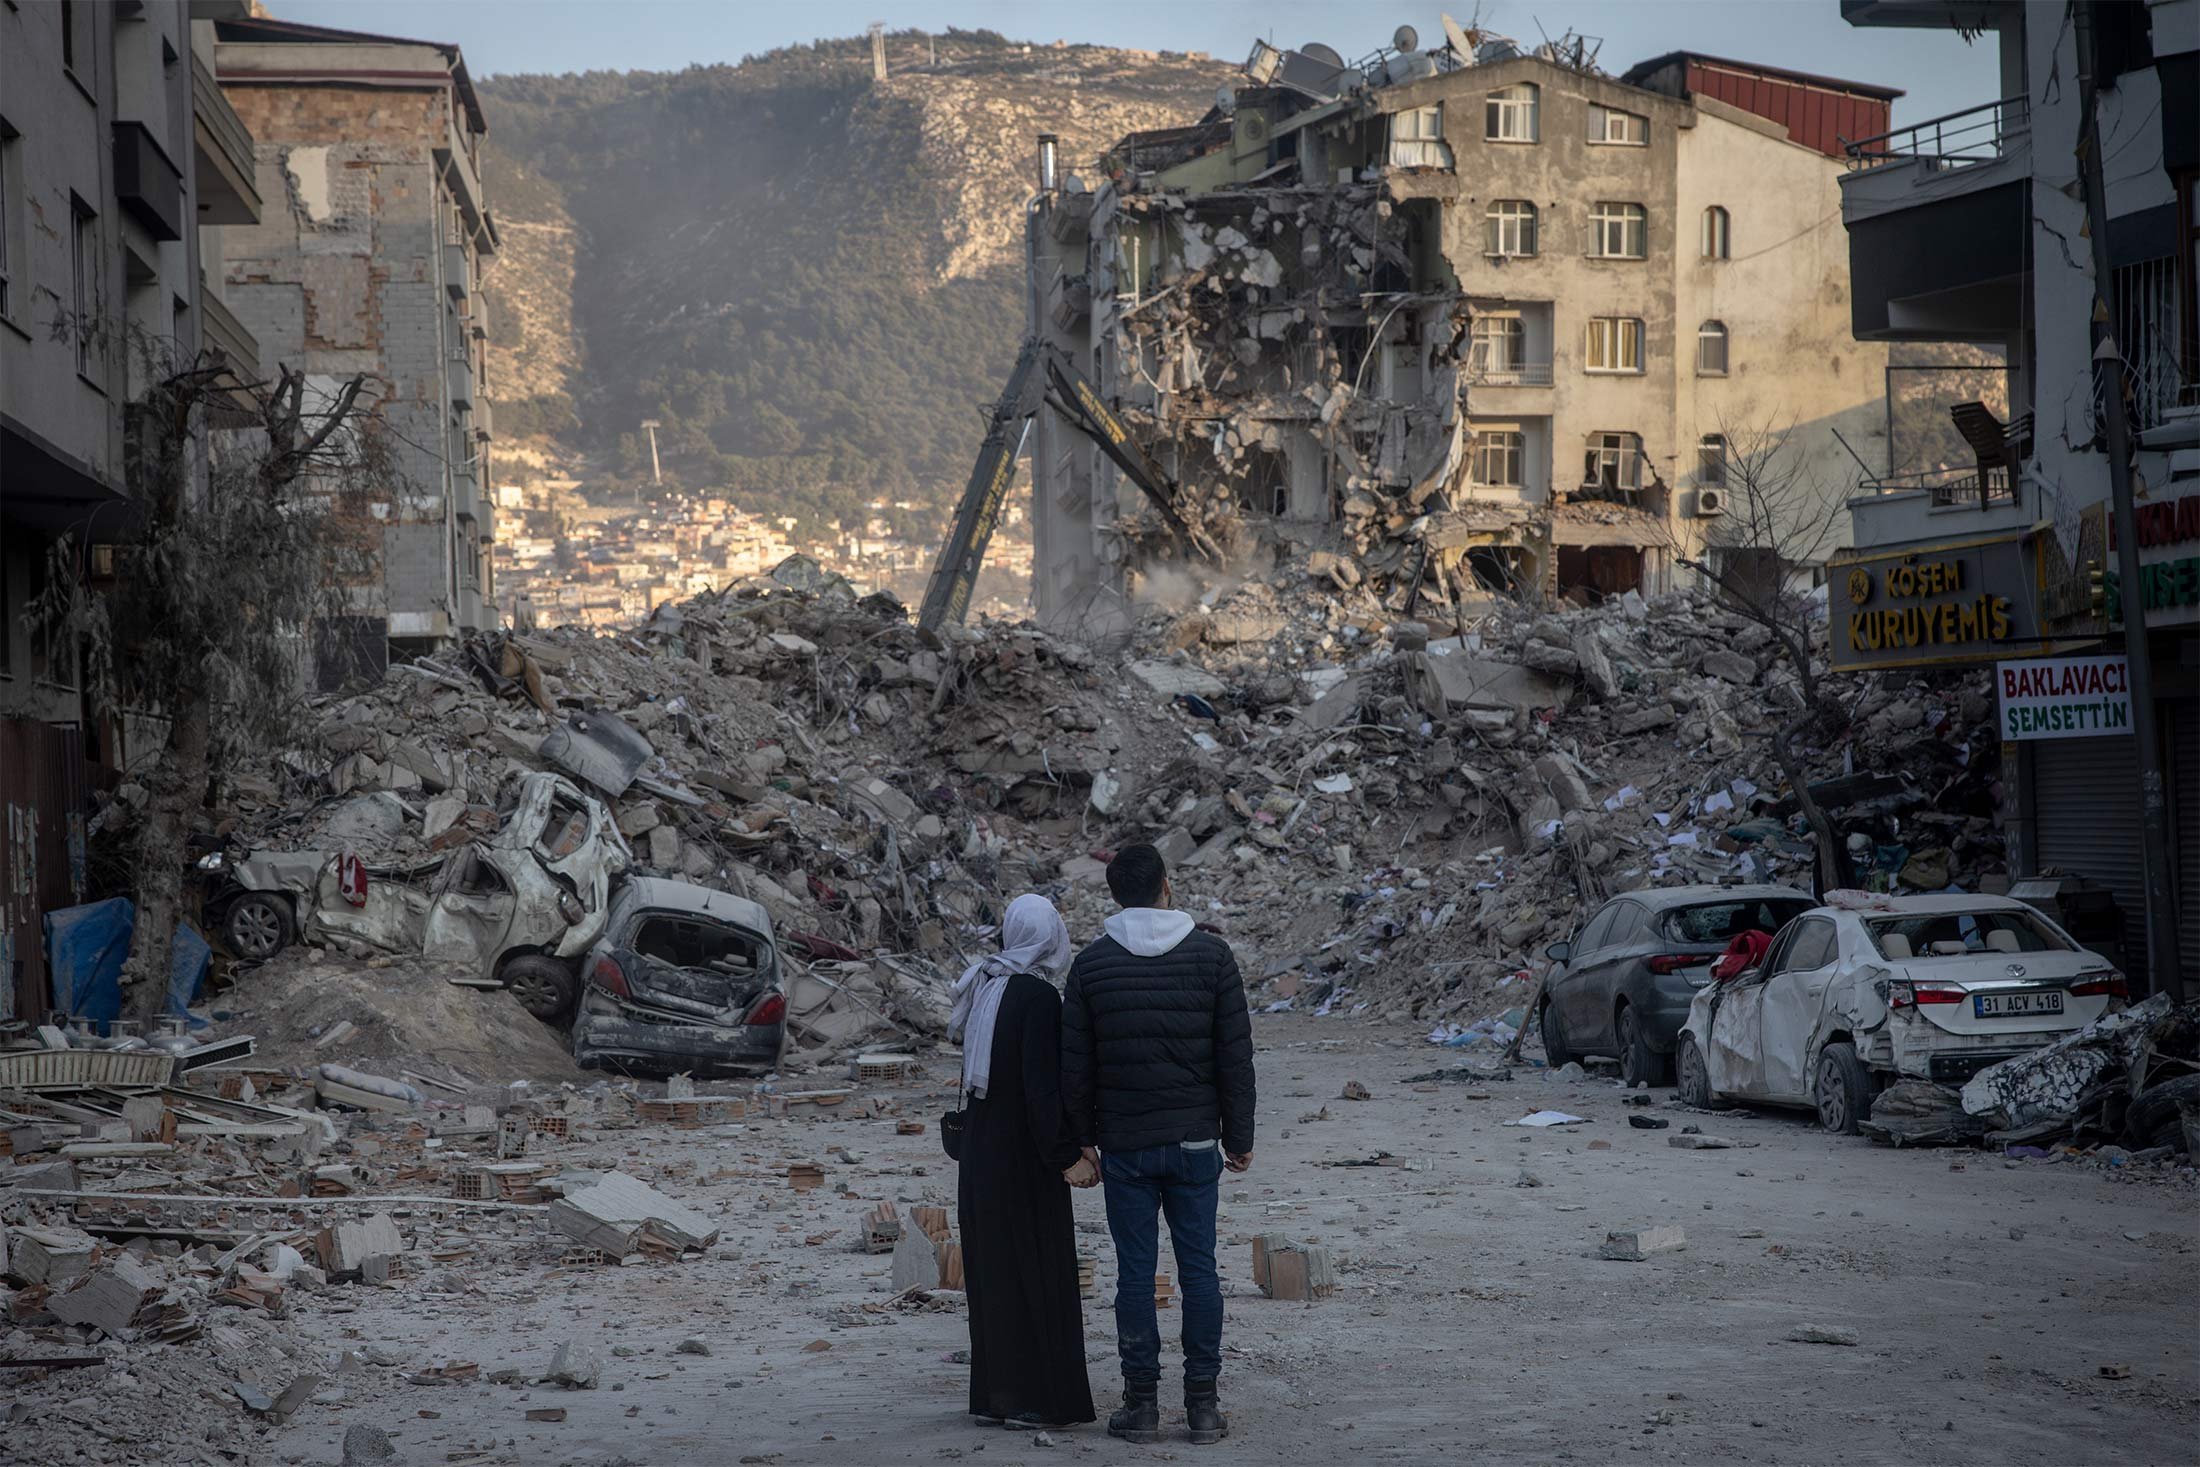  Un nou cutremur puternic a avut loc în Turcia. Mai multe persoane sunt rănite